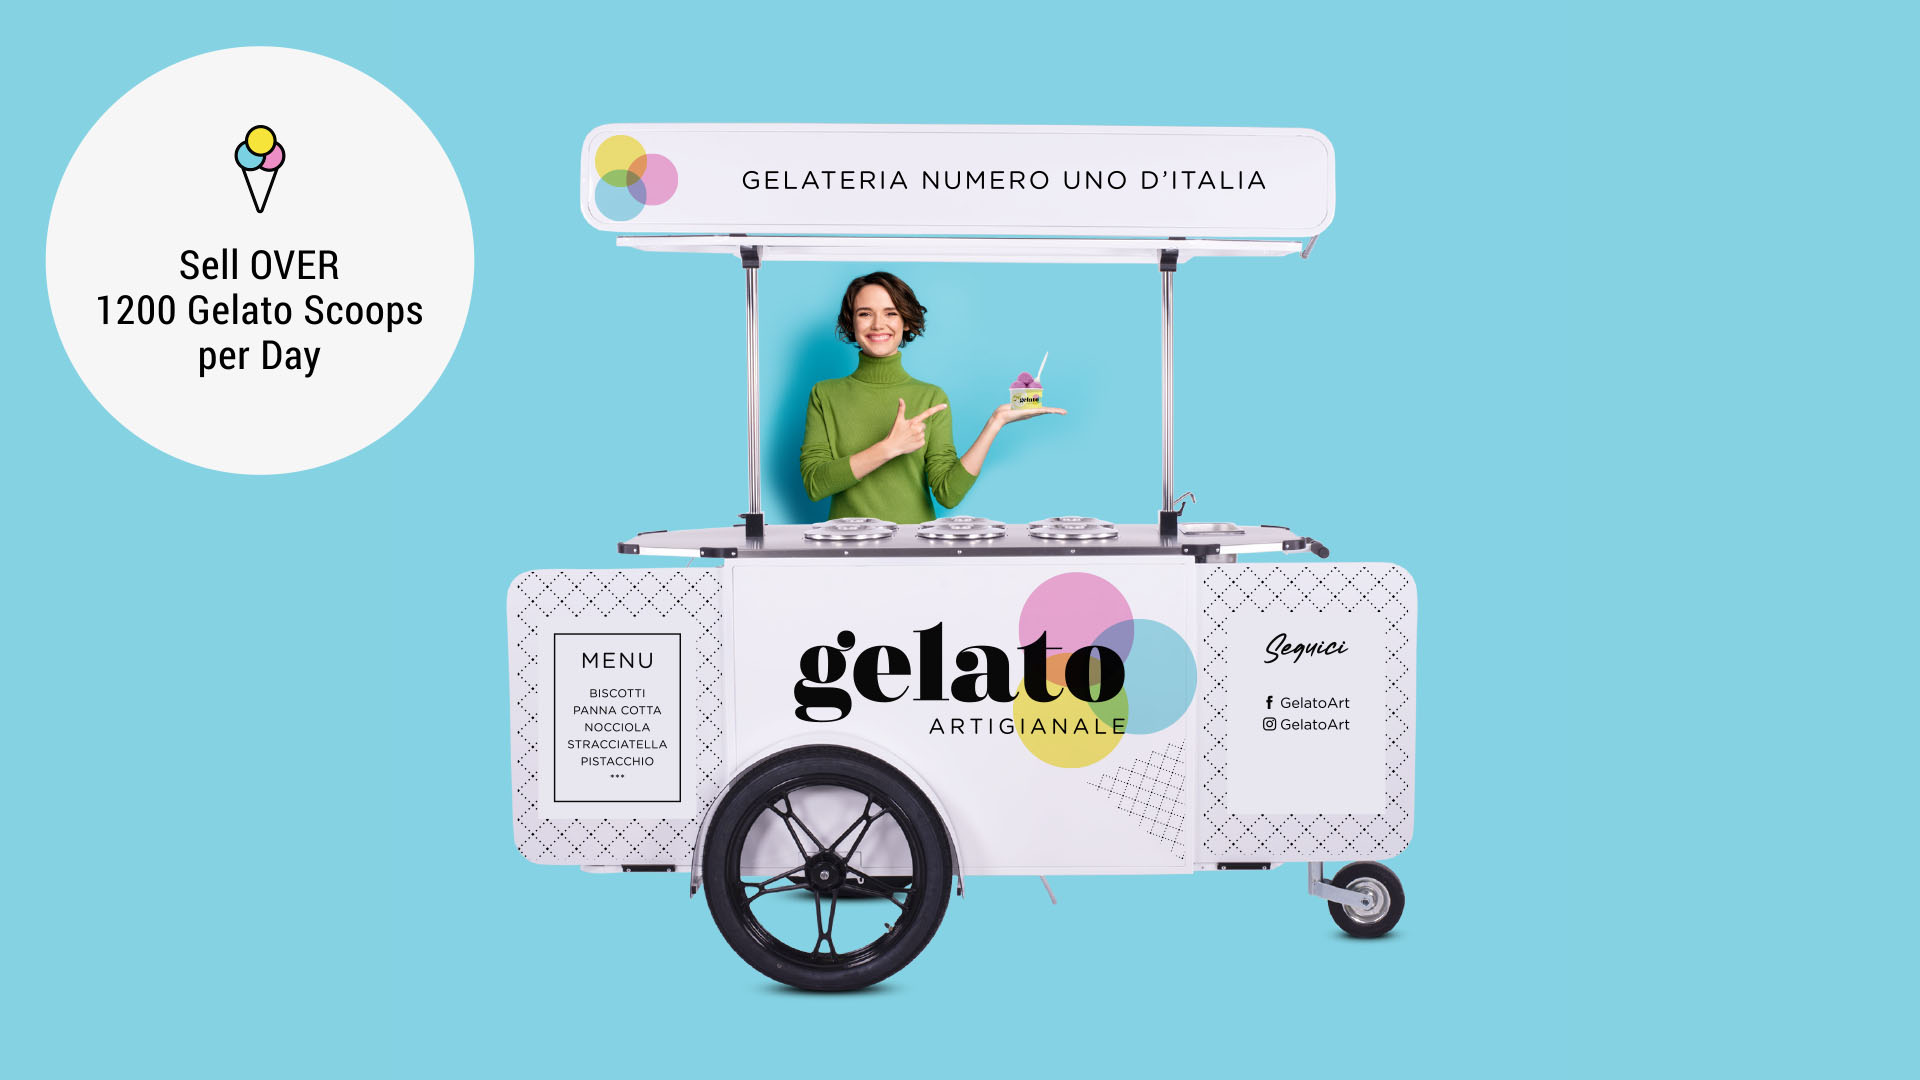 Mobile pozzetti gelato cart on wheels